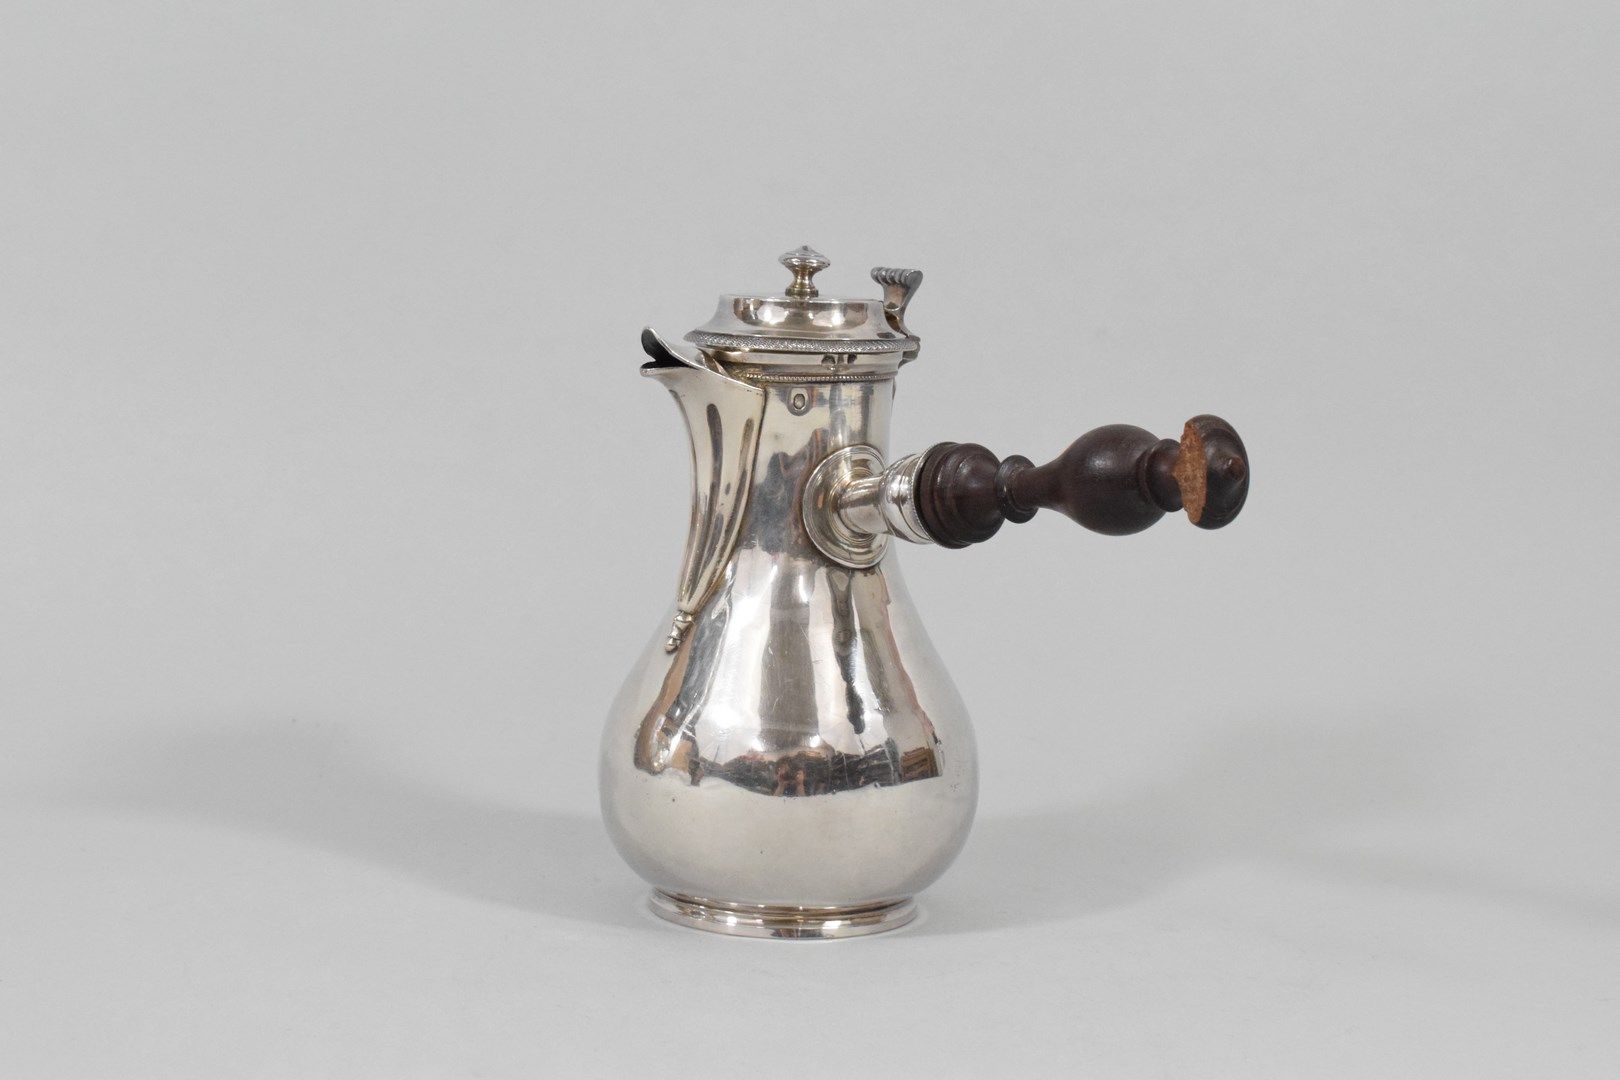 Null 小型银质巧克力罐（950）。

以公鸡为标志。

19世纪初的作品。

毛重 : 284克。

木质手柄损坏严重，需要用胶水粘回去。